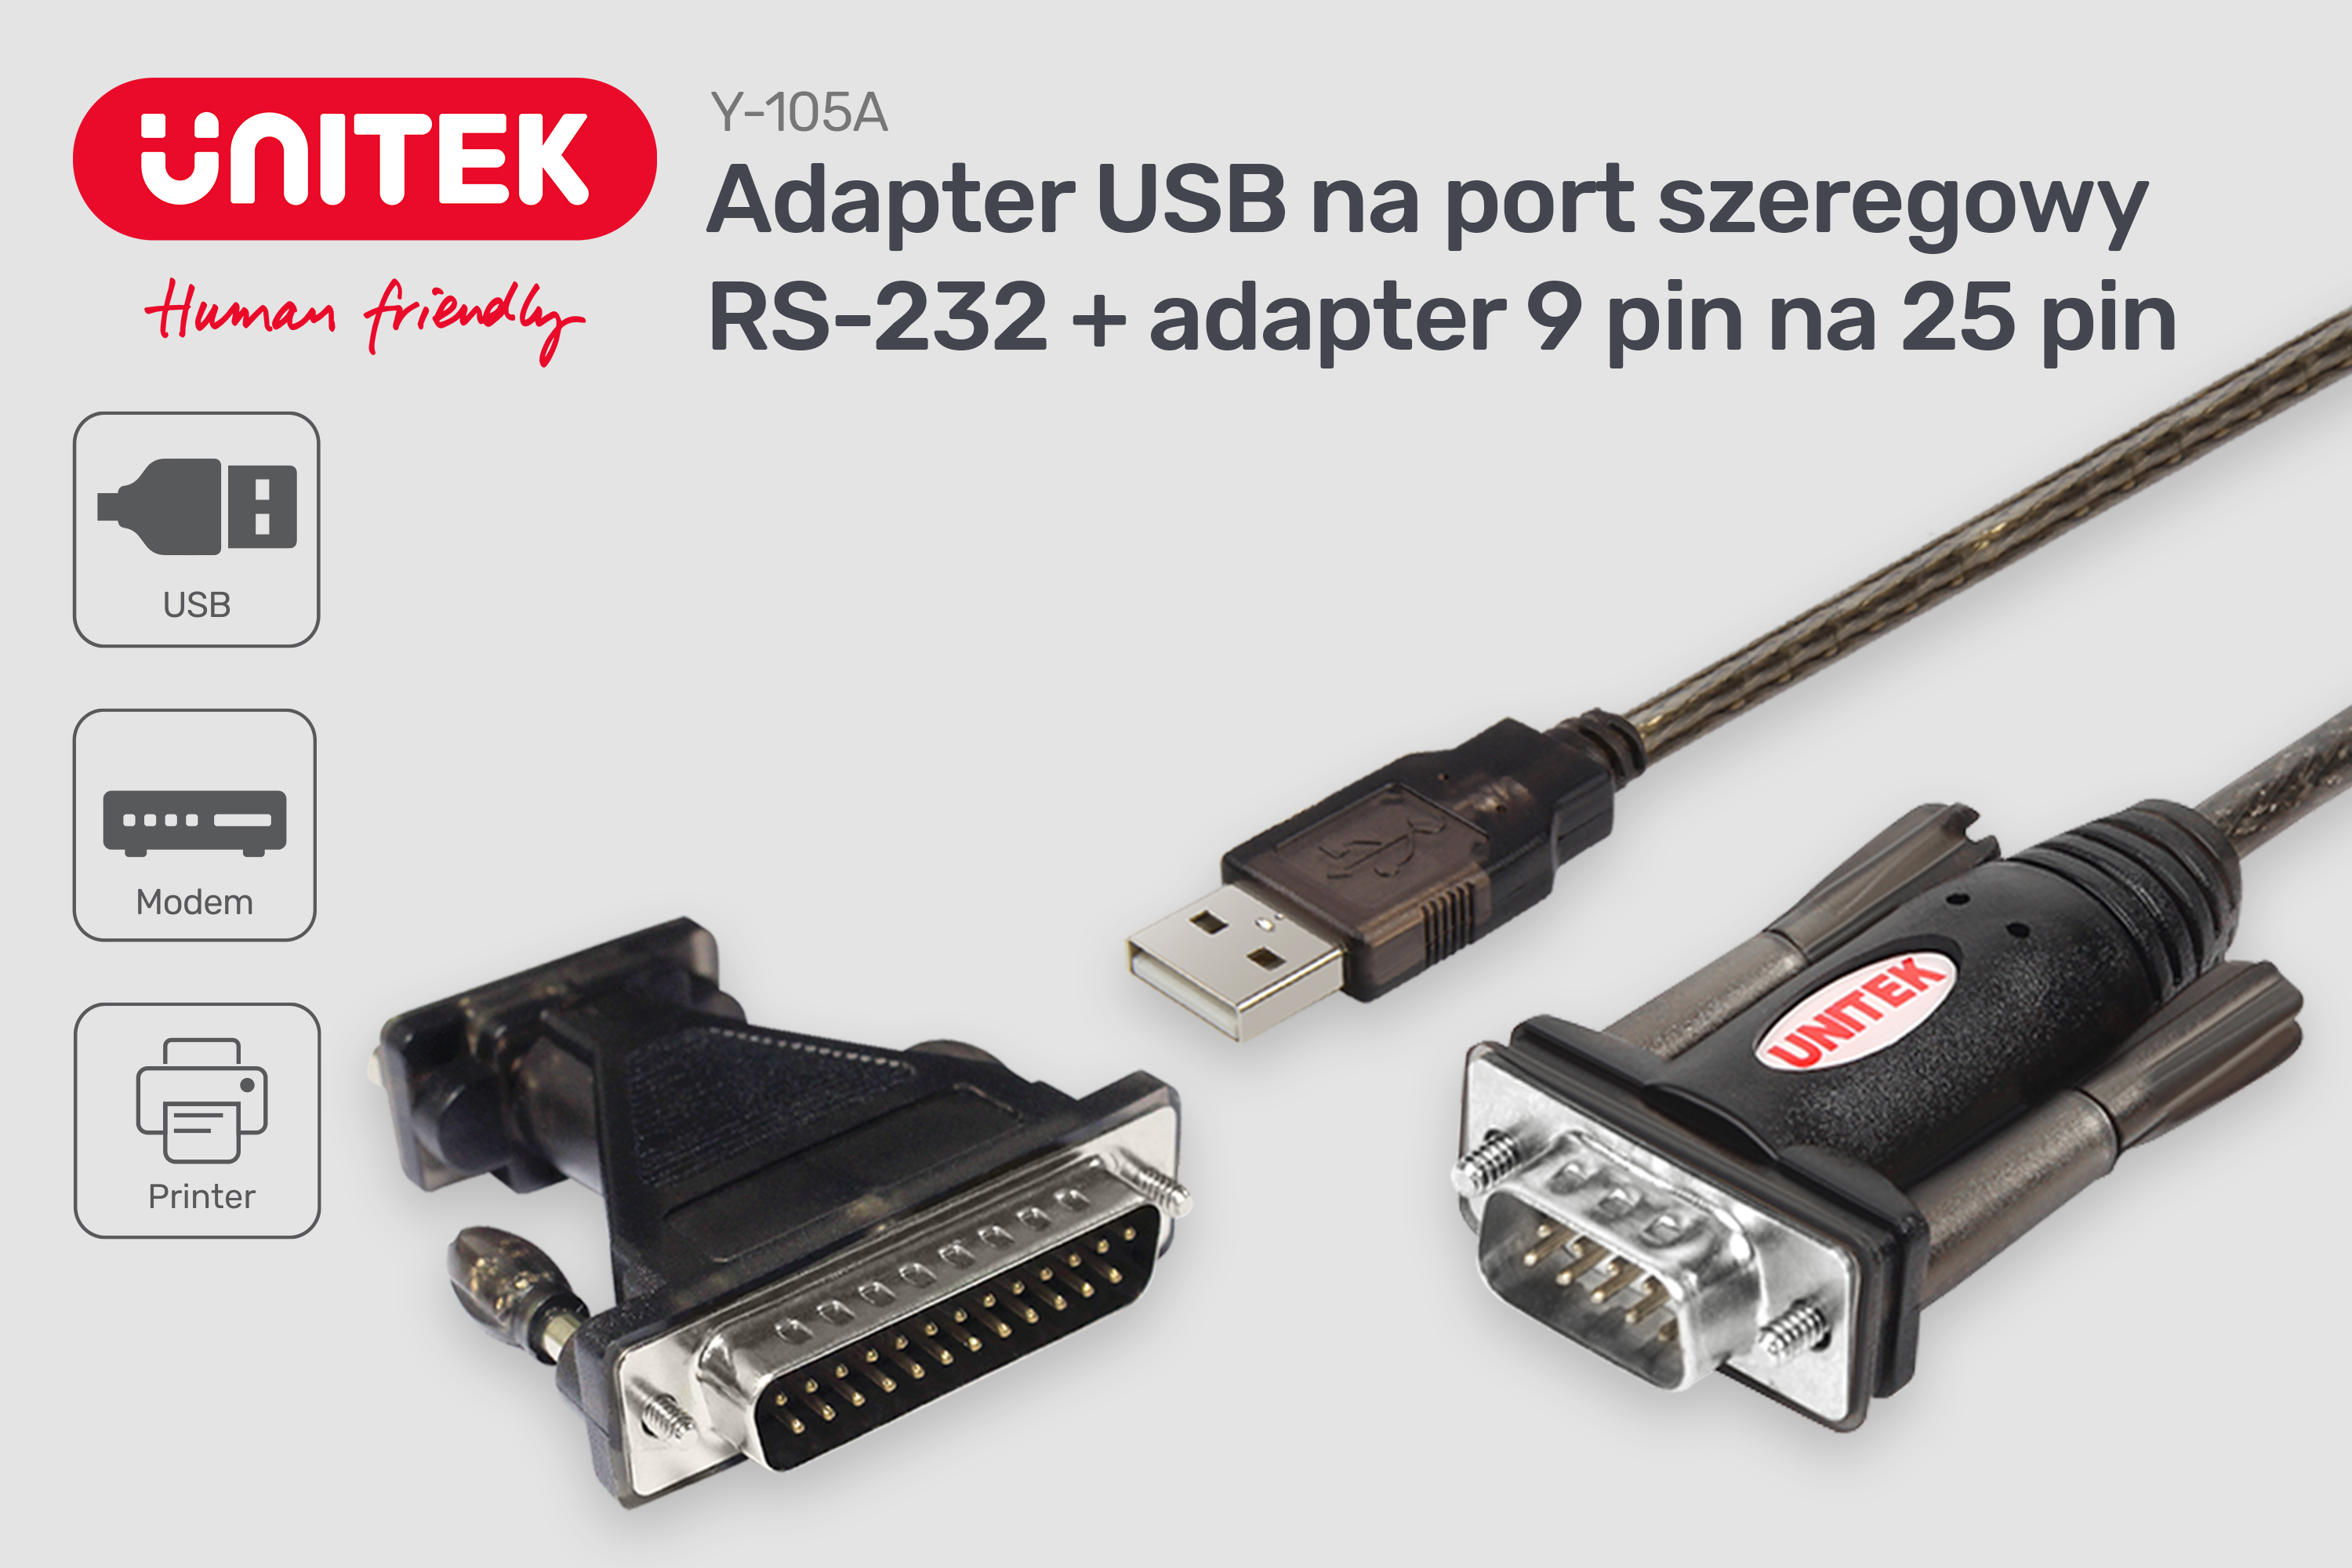 Adapter USB na port szeregowy